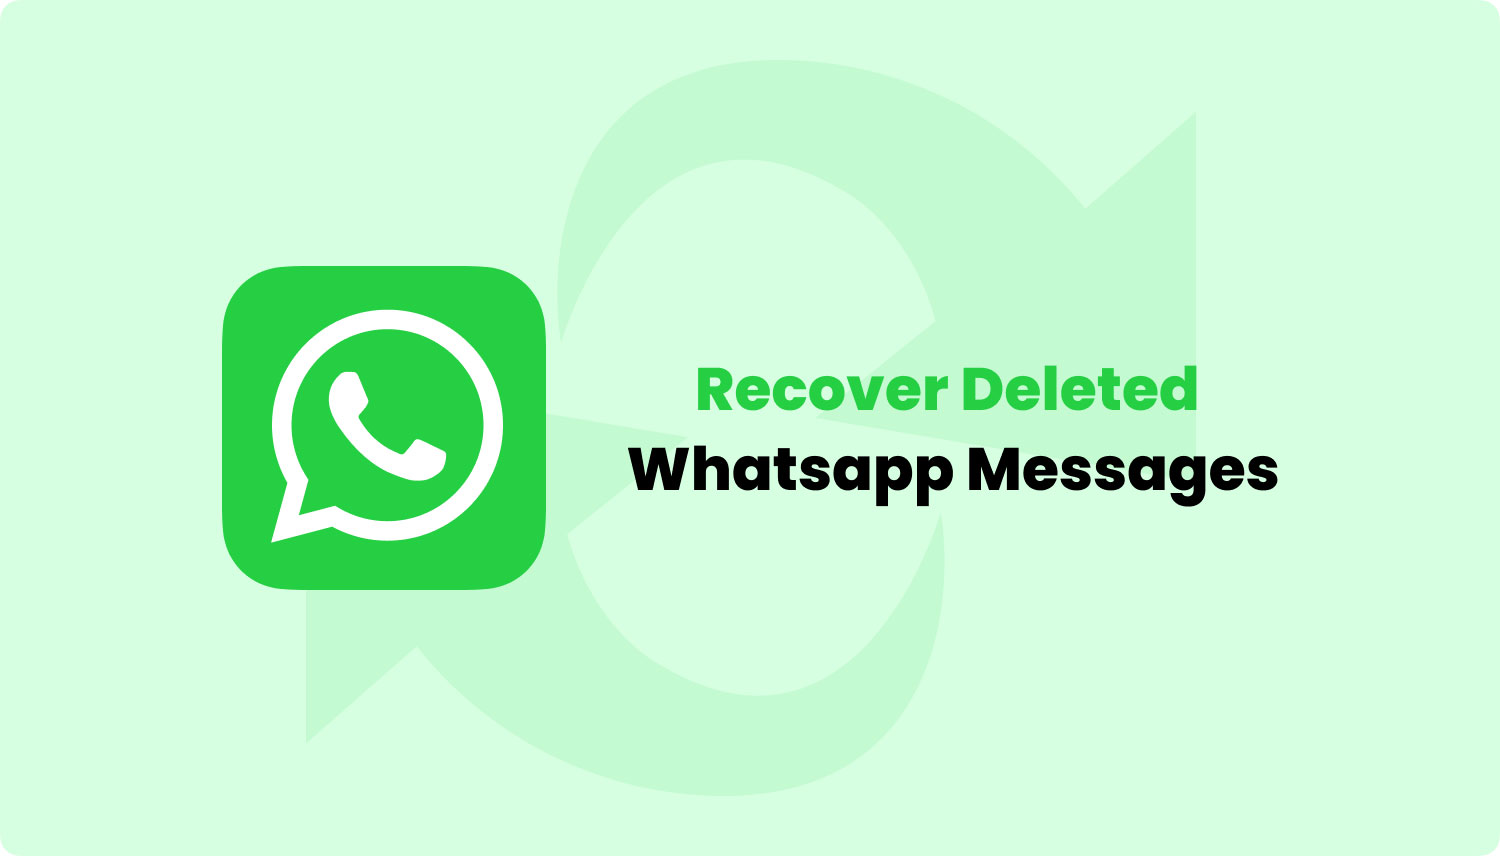 Motivi per la cancellazione di account e messaggi WhatsApp